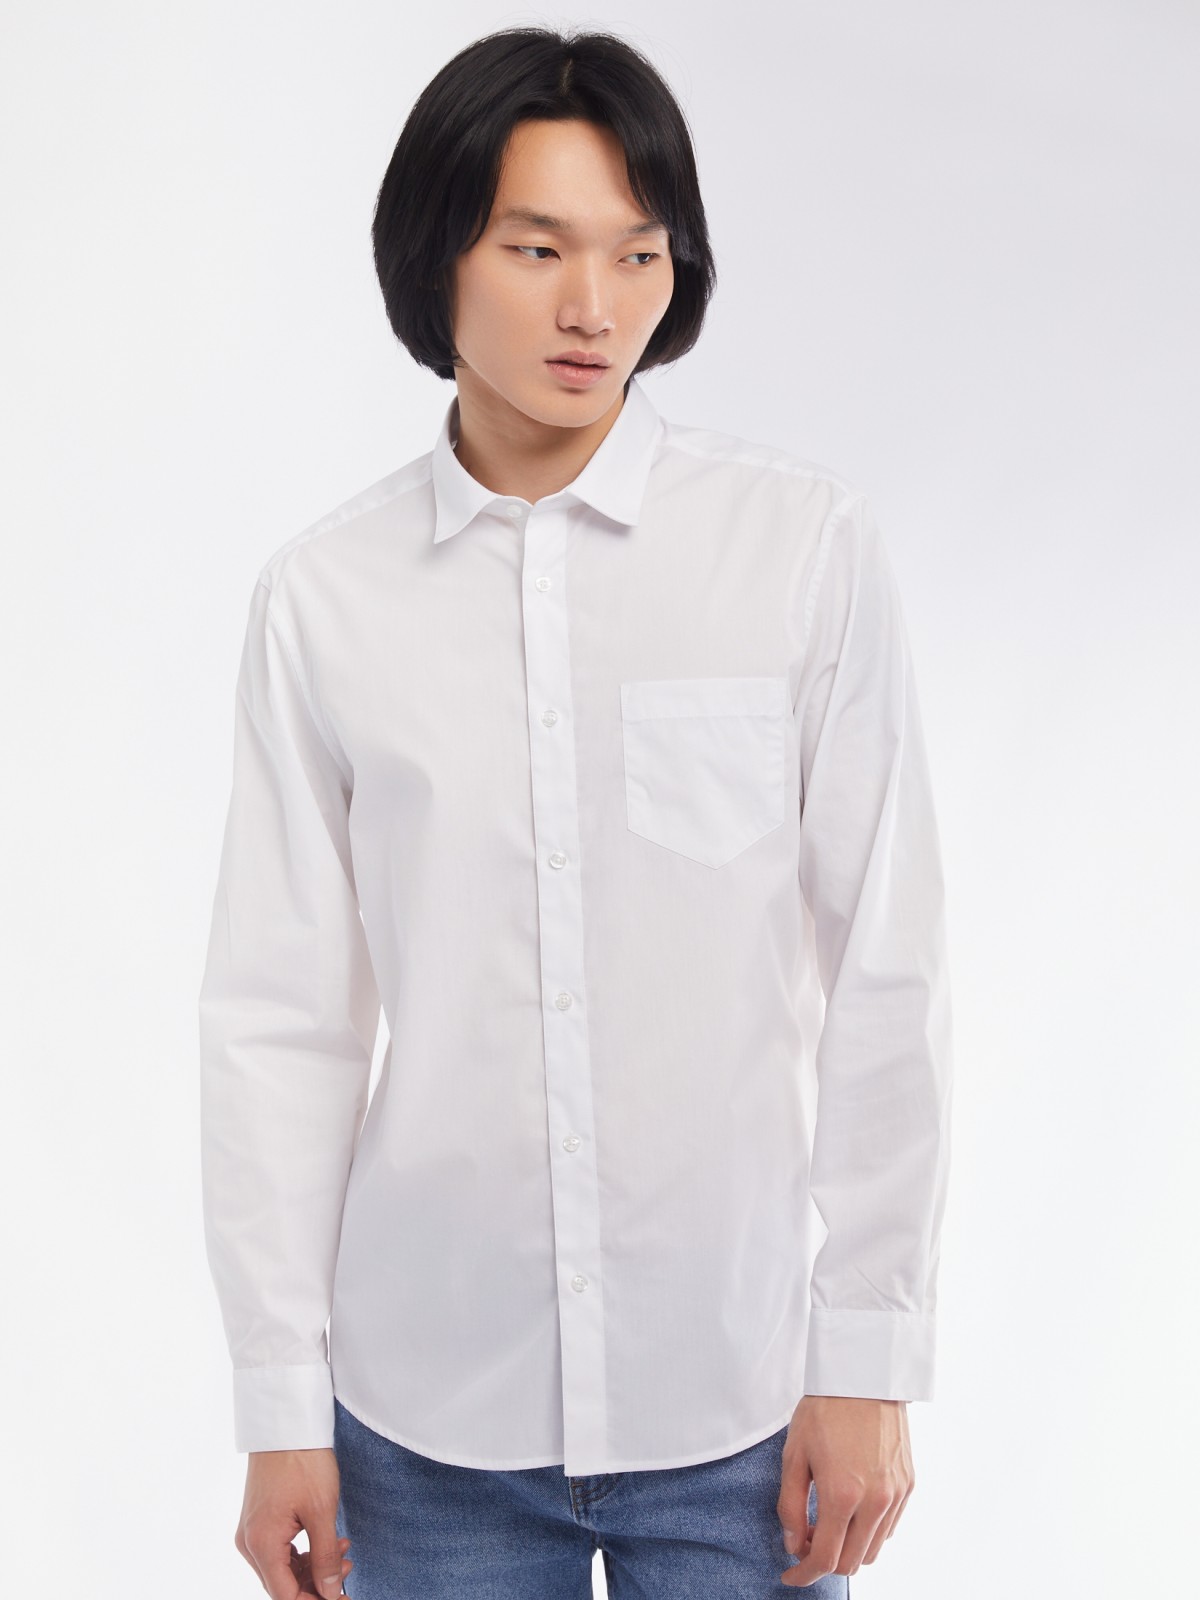 Офисная рубашка прямого силуэта с карманом zolla 014112162112, цвет белый, размер M - фото 4